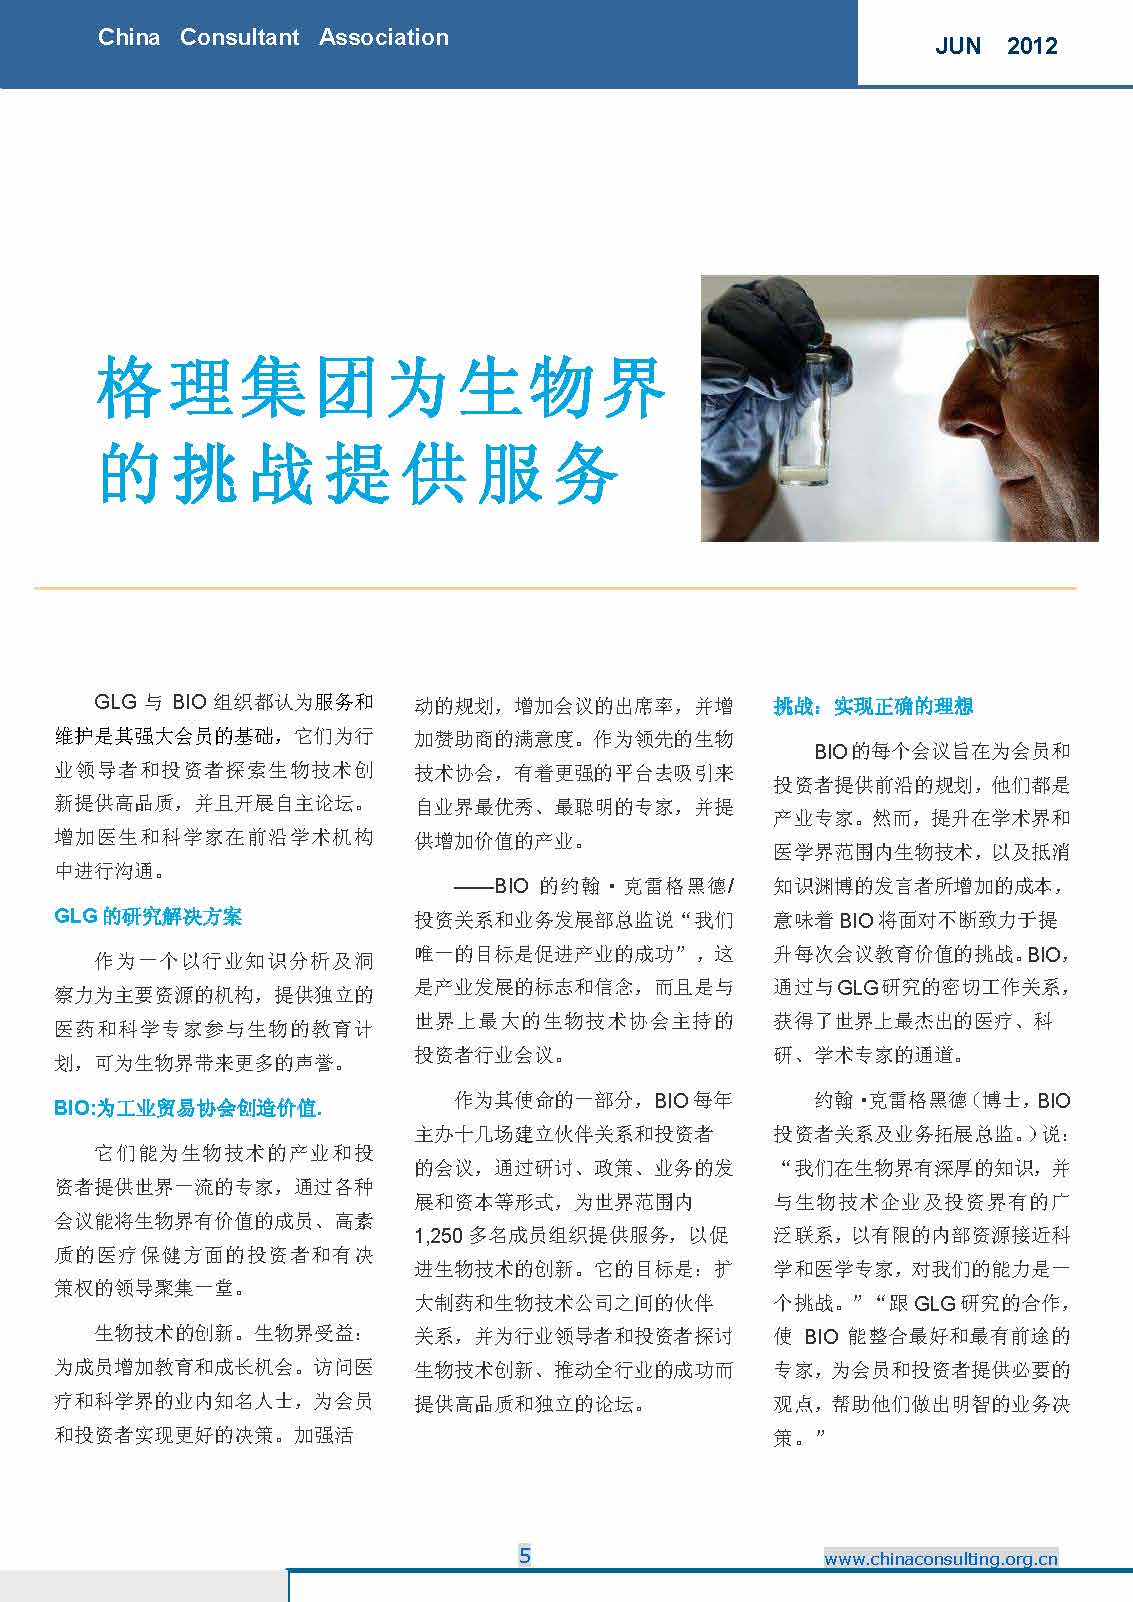 7中国科技咨询协会国际快讯（第七期）_页面_07.jpg